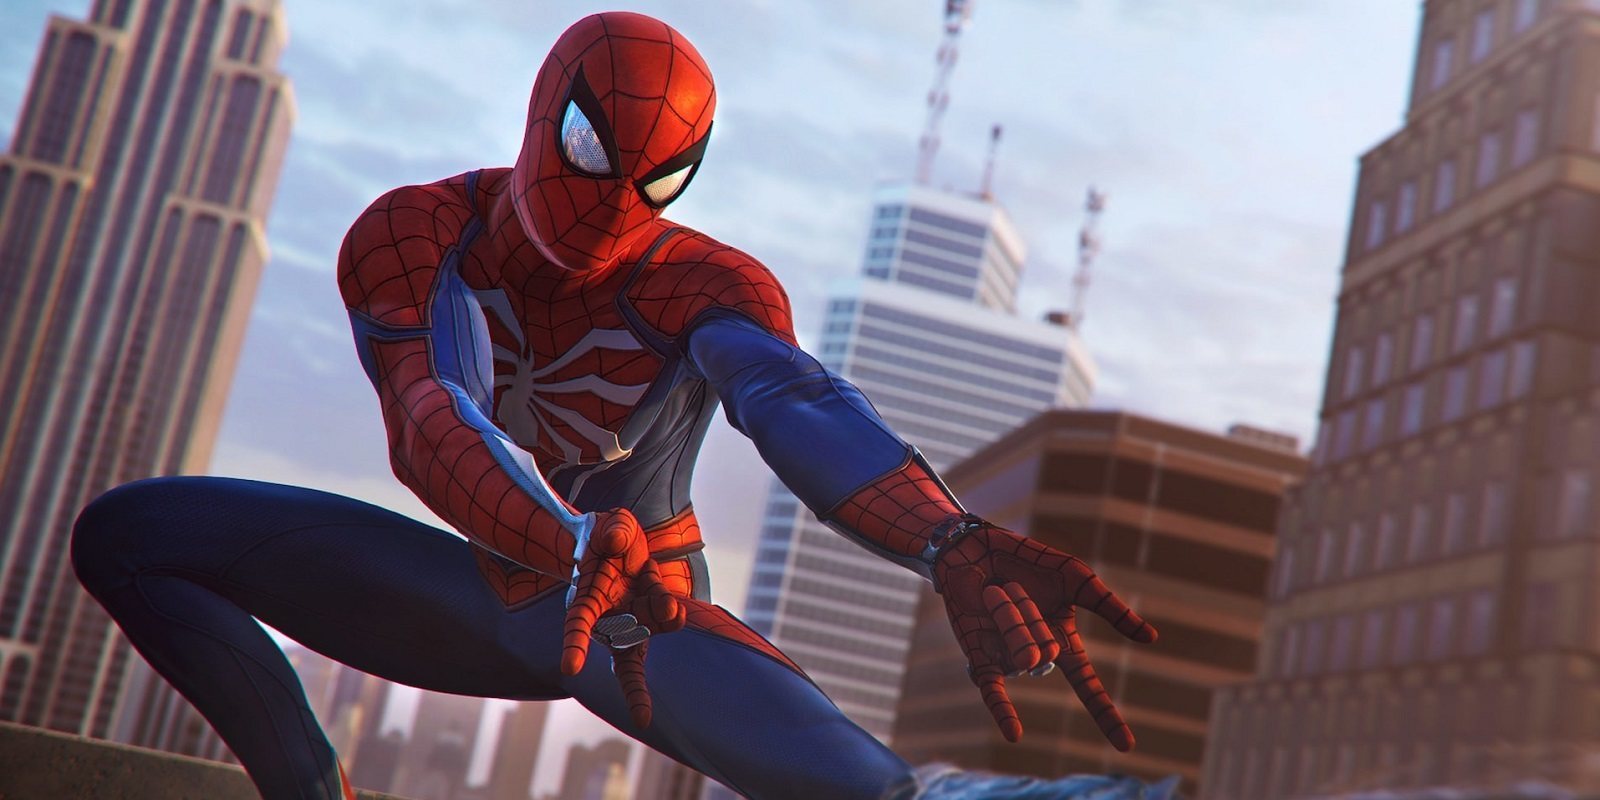 Insomniac Games detalla aspectos técnicos de 'Spider-Man' antes del lanzamiento